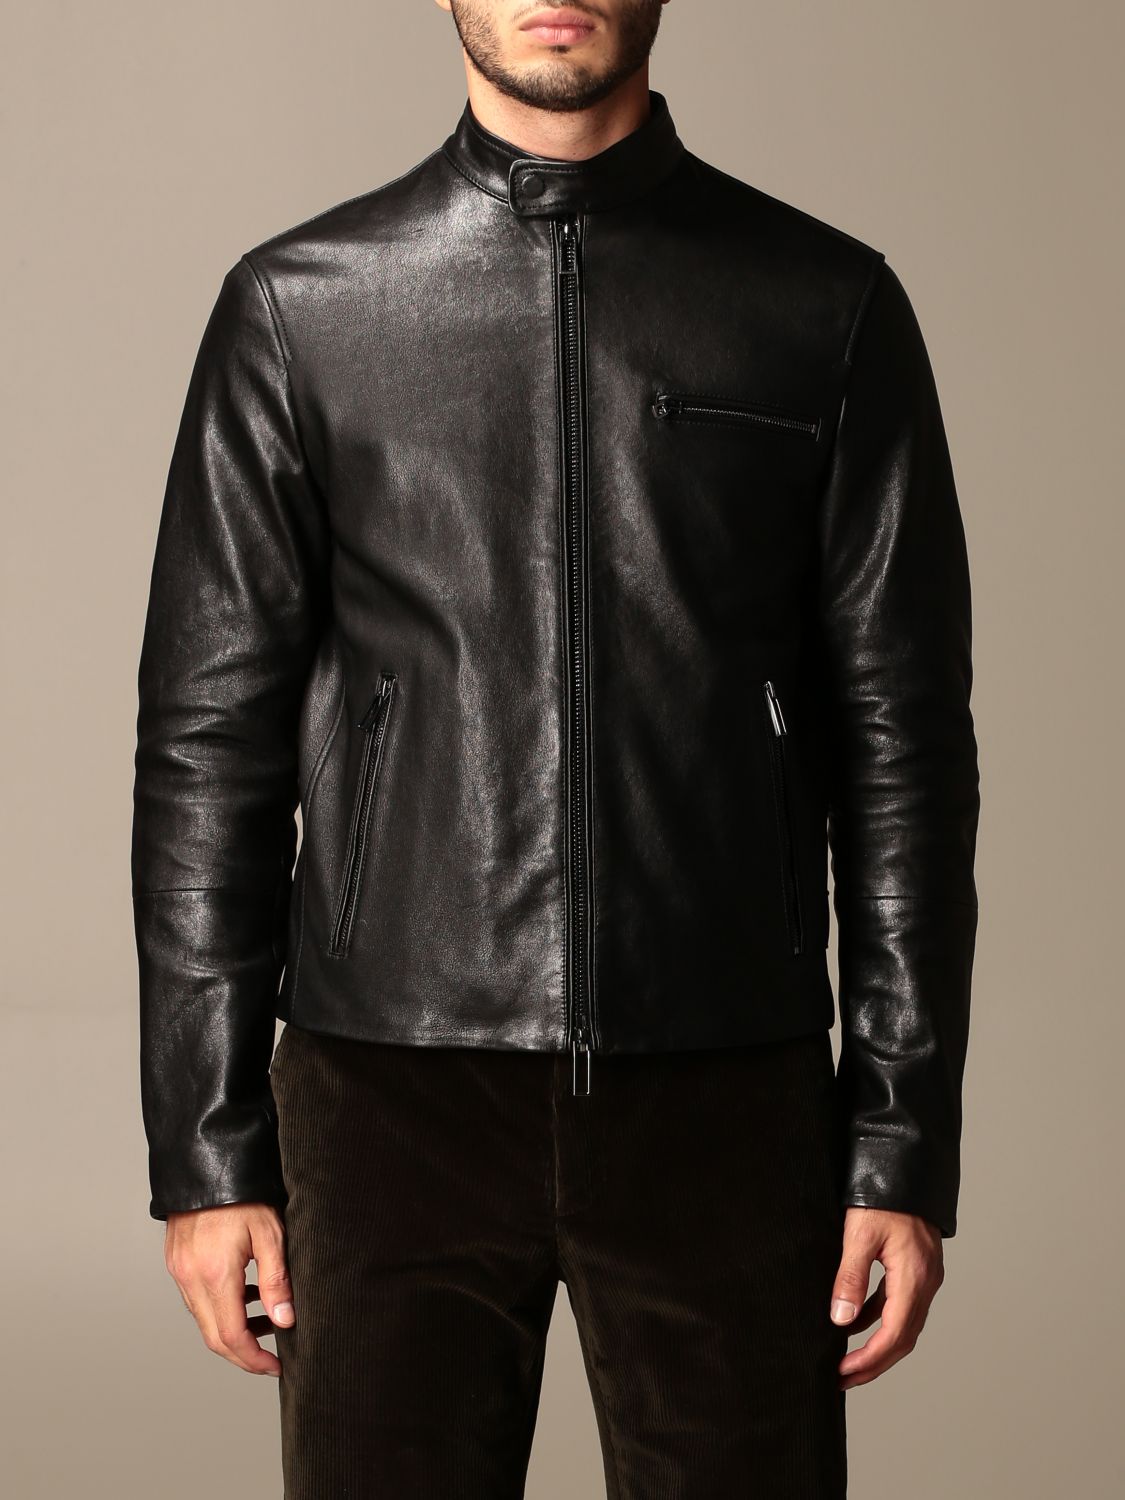 Emporio Armani Outlet: leather jacket - Black | Emporio Armani jacket ...